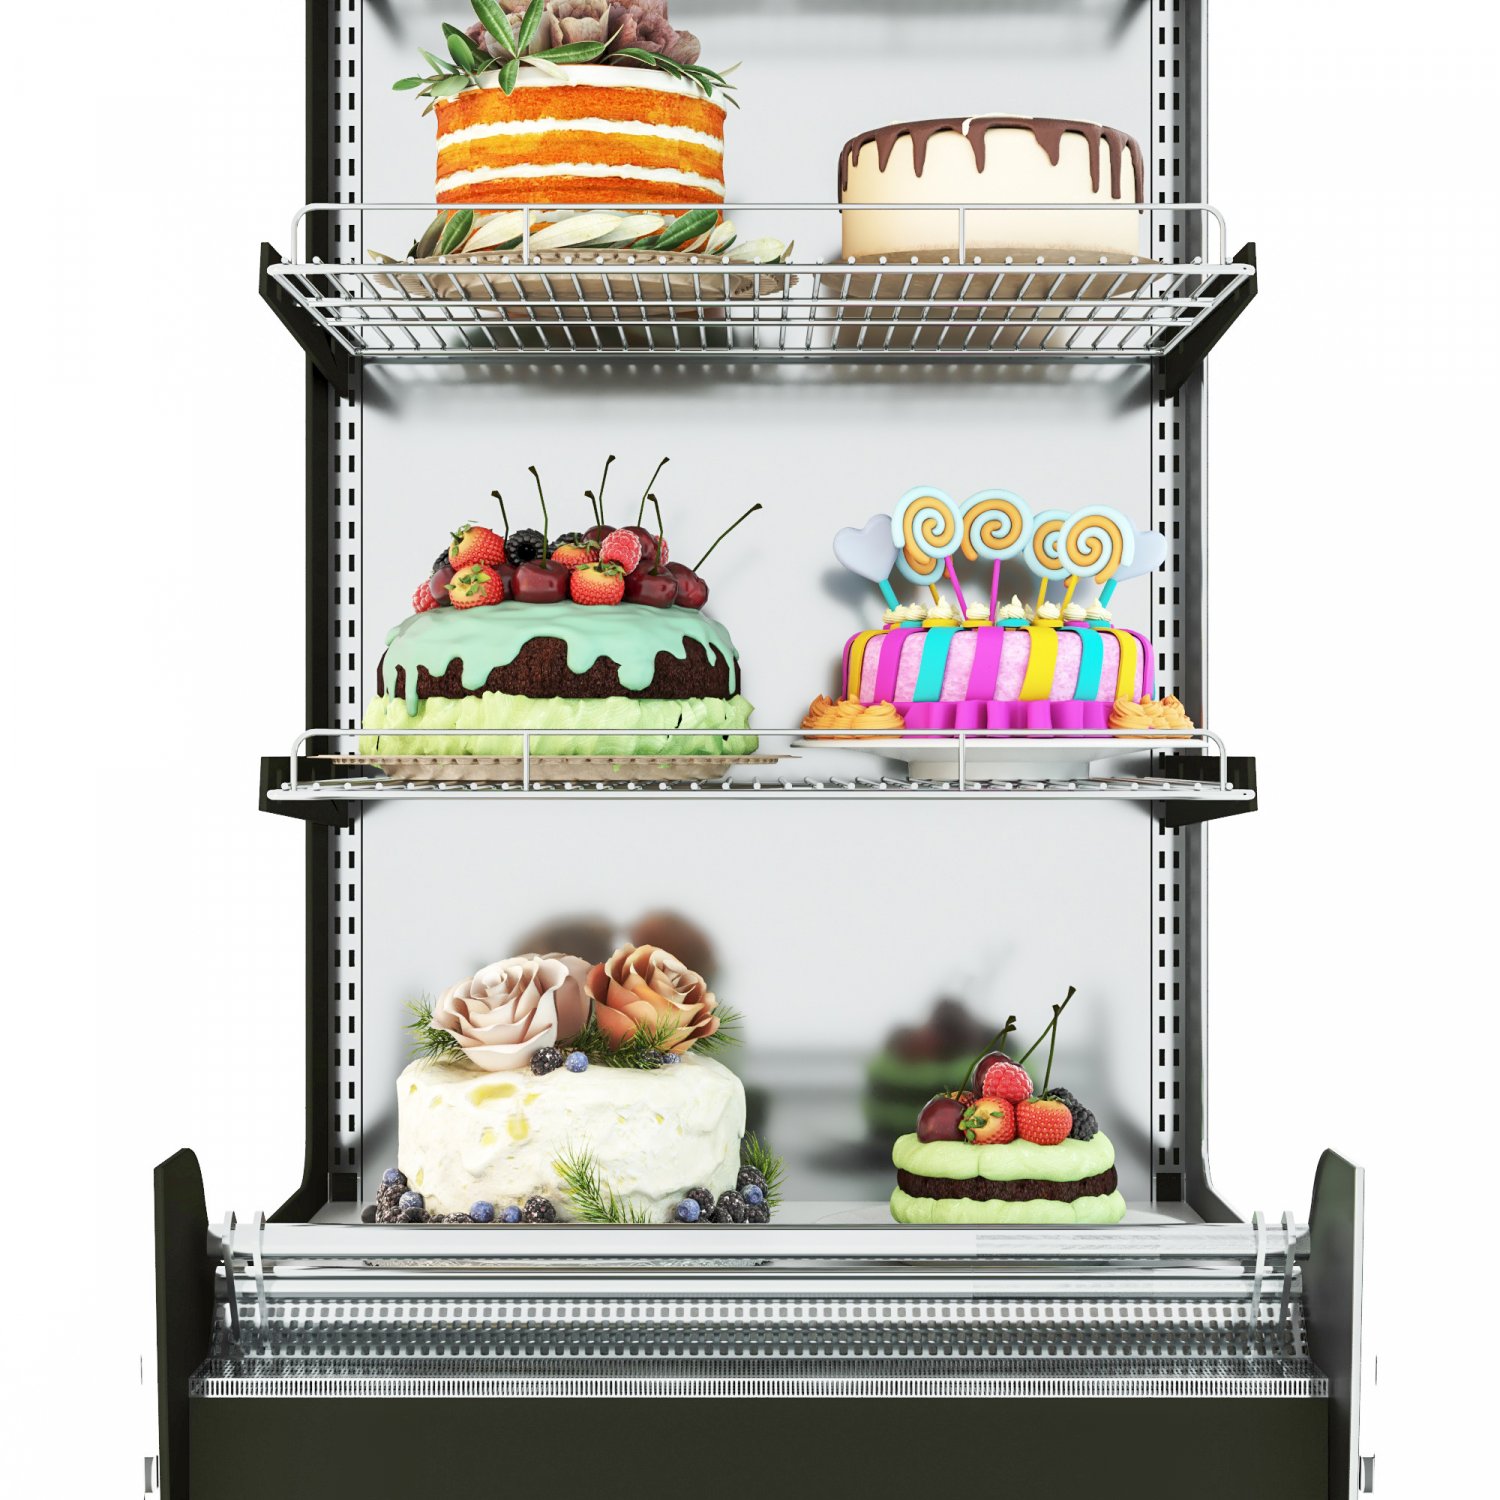 Model# 91001 - 3D Letter R Cake - LGV Bakery